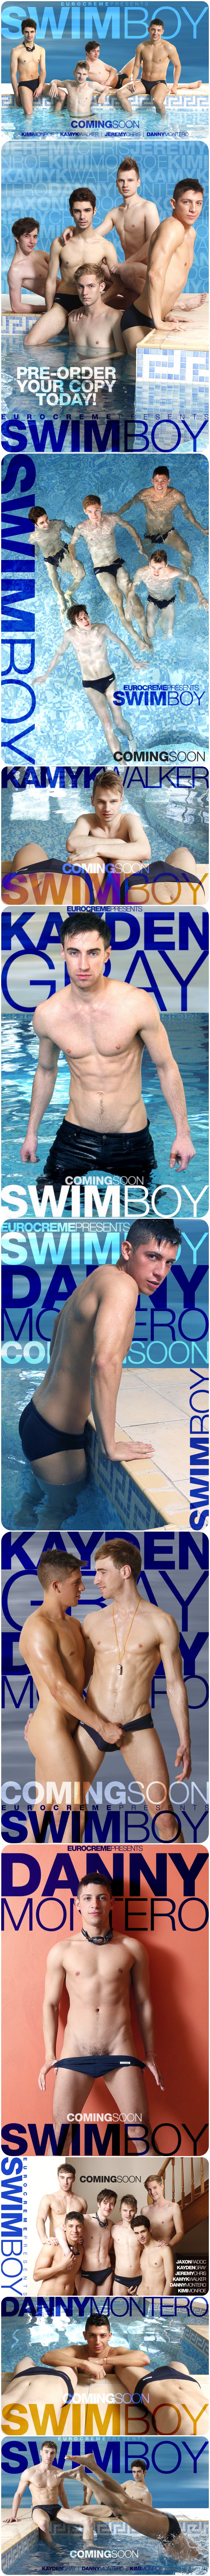 eurocreme-swimboy